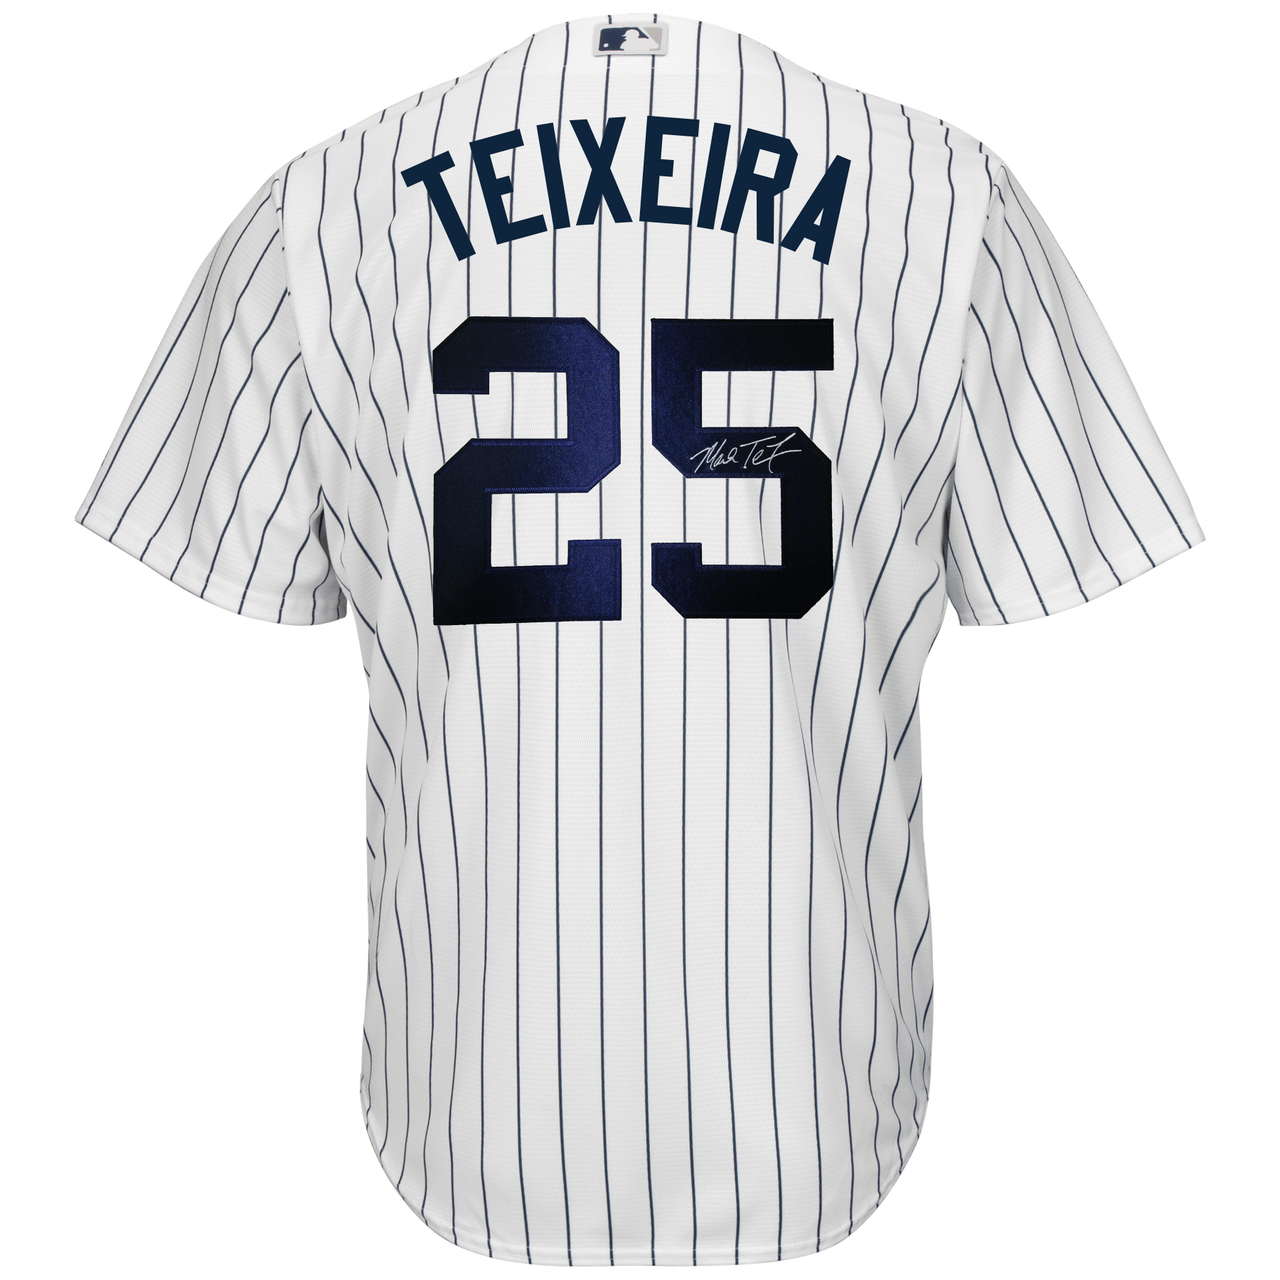 Mark Teixeira Signature Series Jersey 